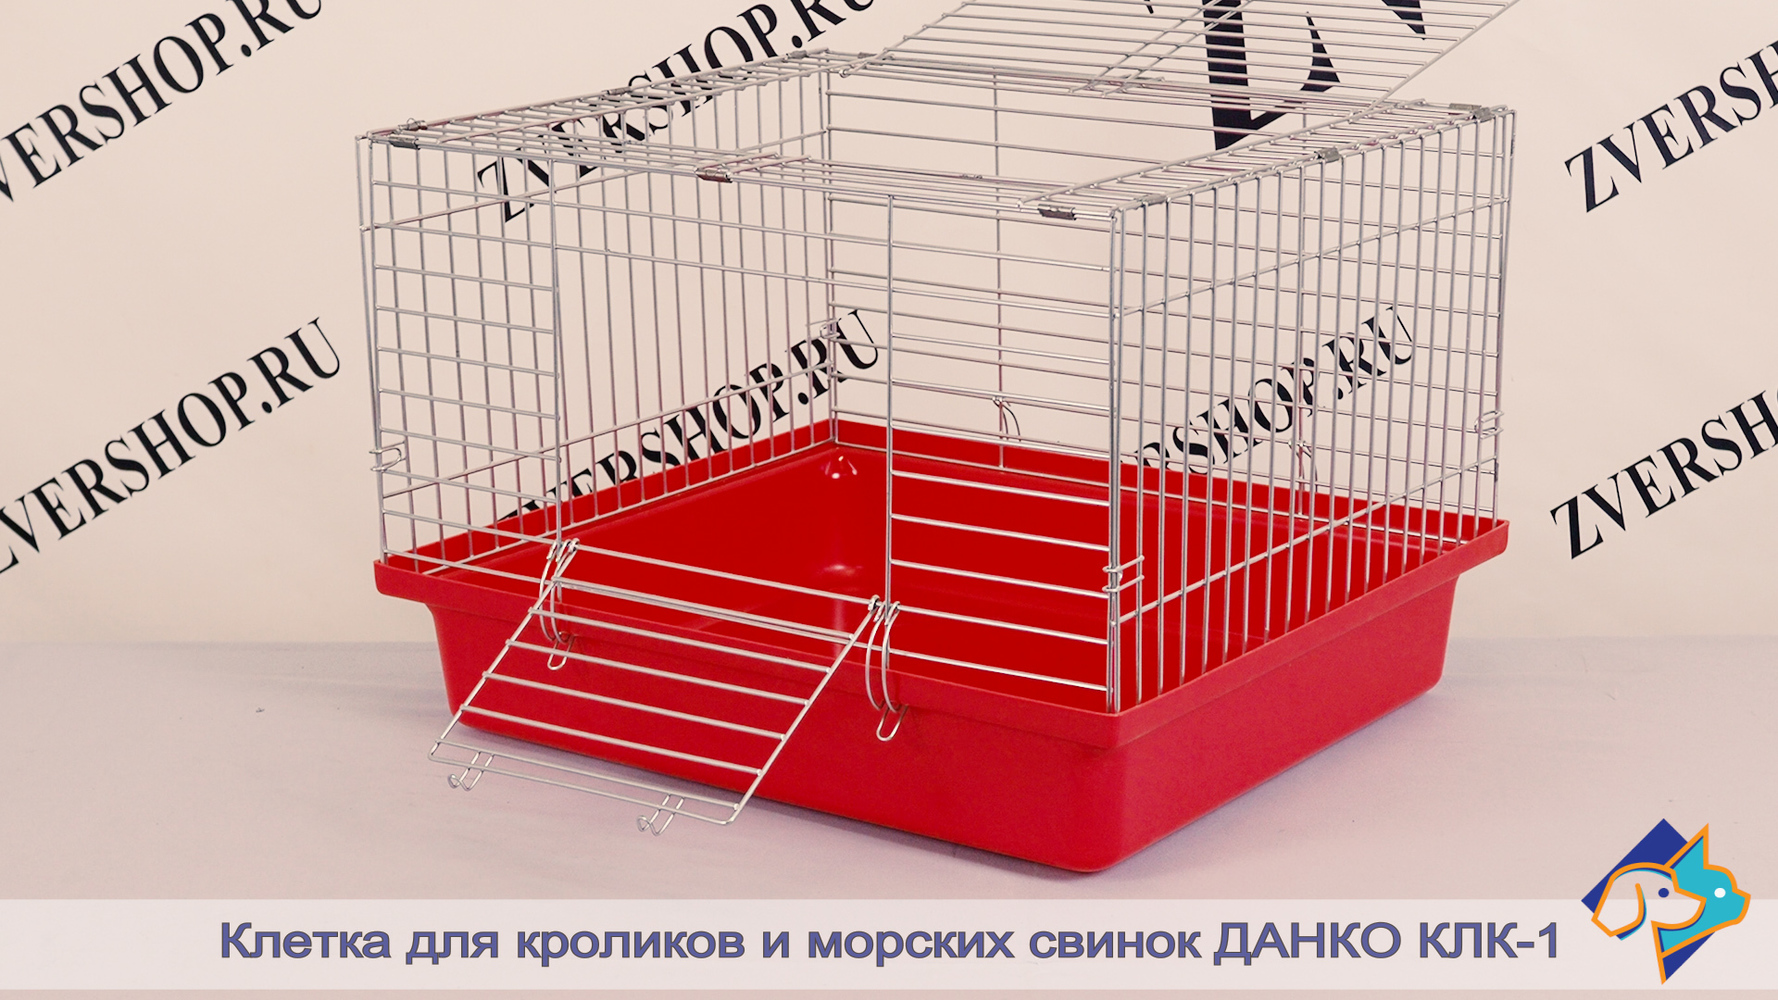 Фото Клетка для кроликов, морских свинок КлК-1 на пластиковом поддоне Данко, разборная, в коробке  